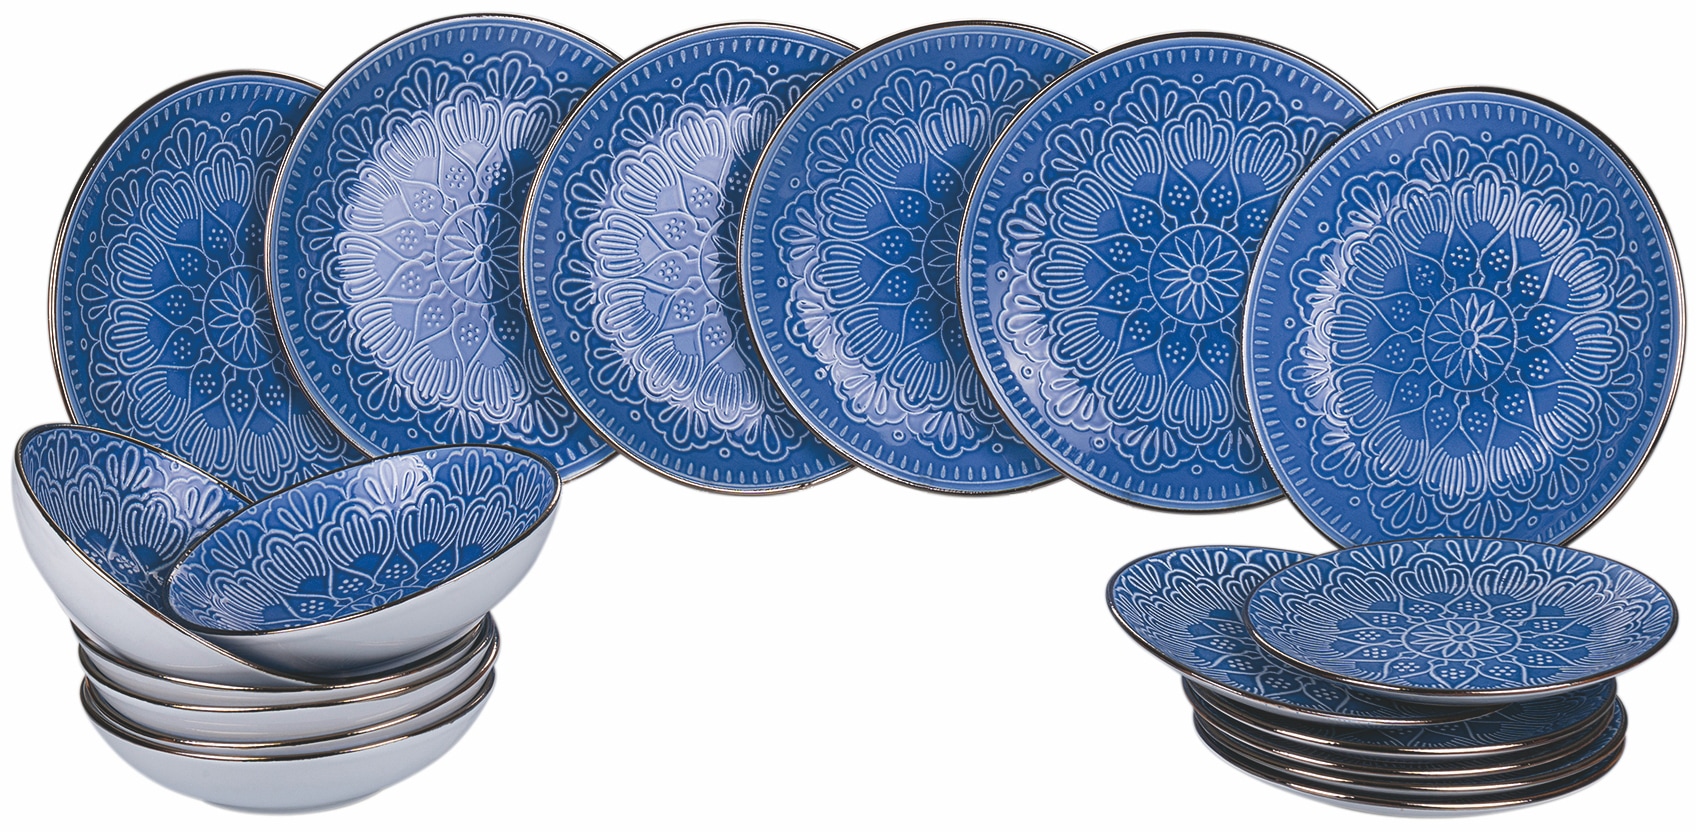 Geschirr & Porzellan in Blau auf Rechnung kaufen | Universal. Jeder hat  sein